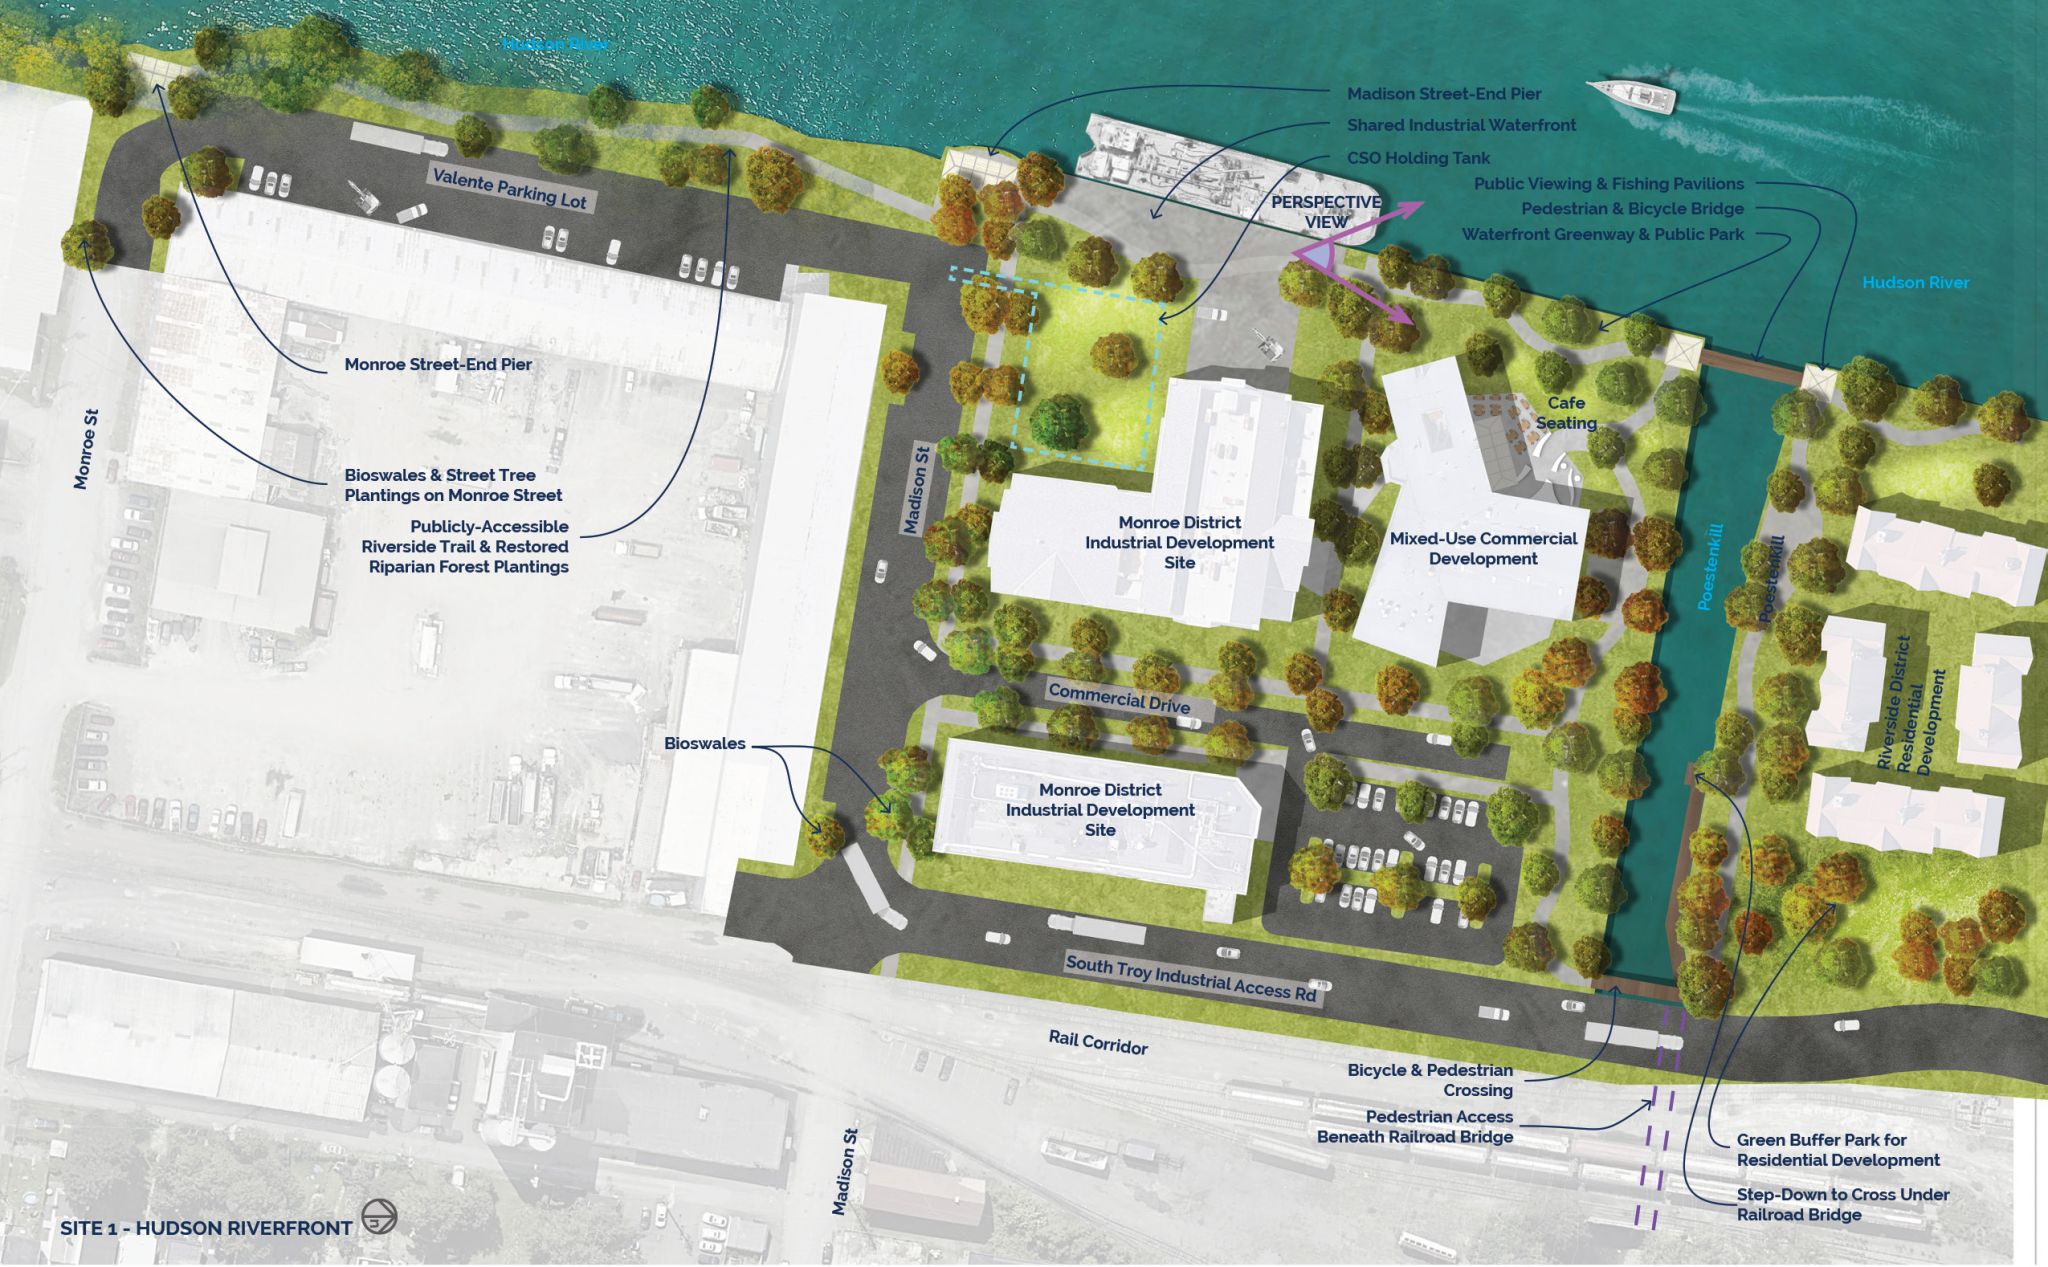 Troy_Site-1_Hudson-Riverfront_Plan.jpg